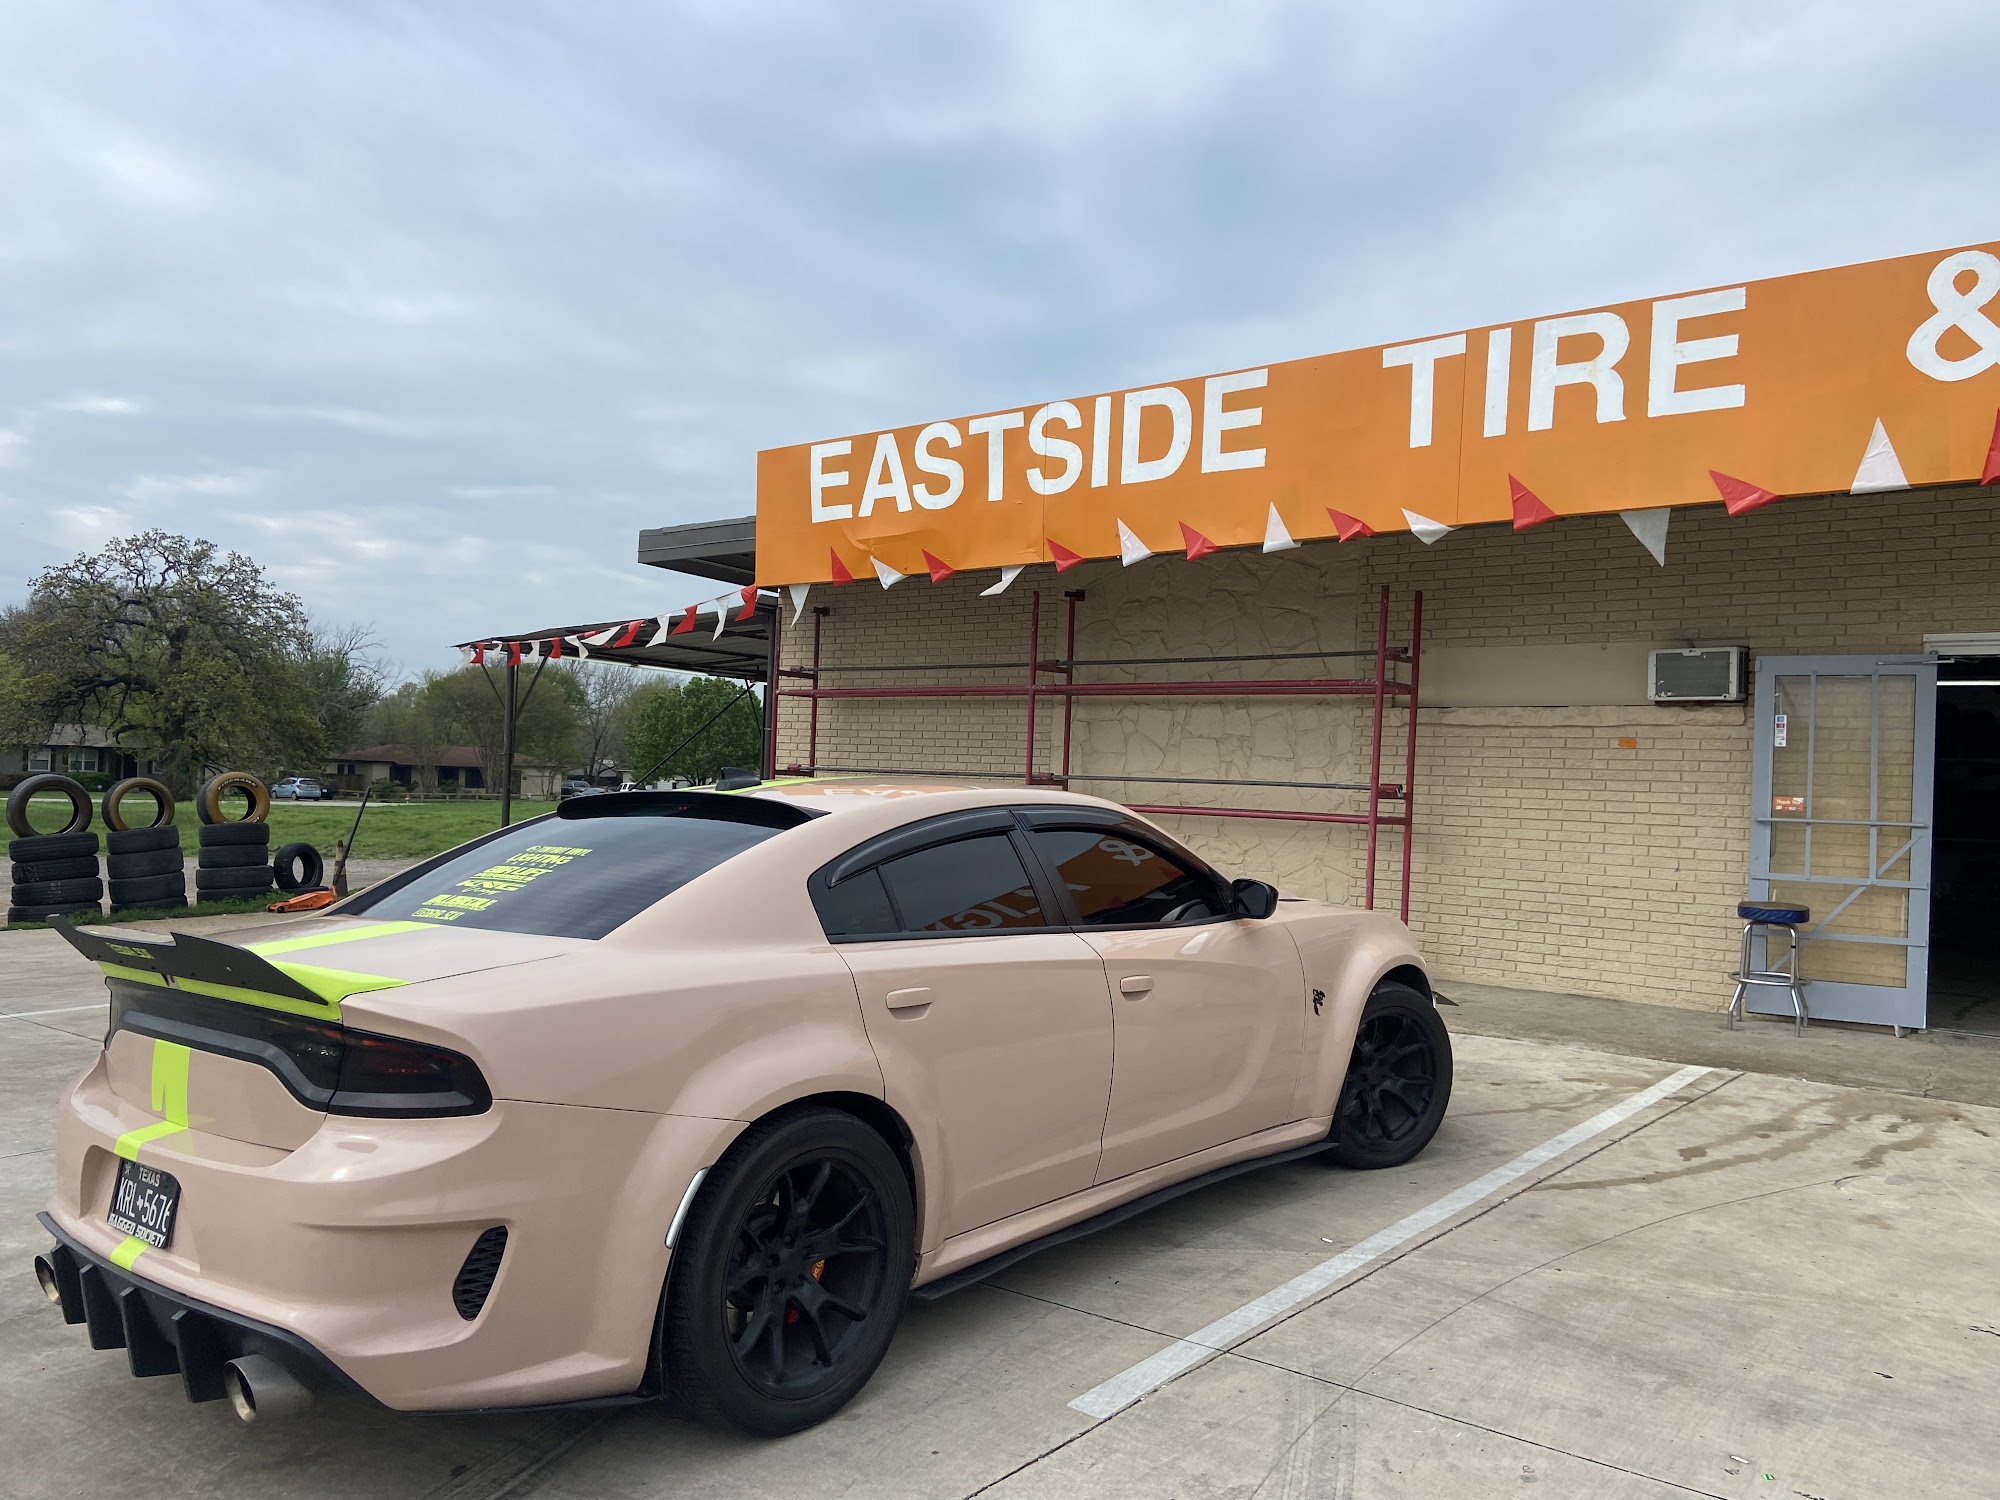 Eastside Tire & Alignment